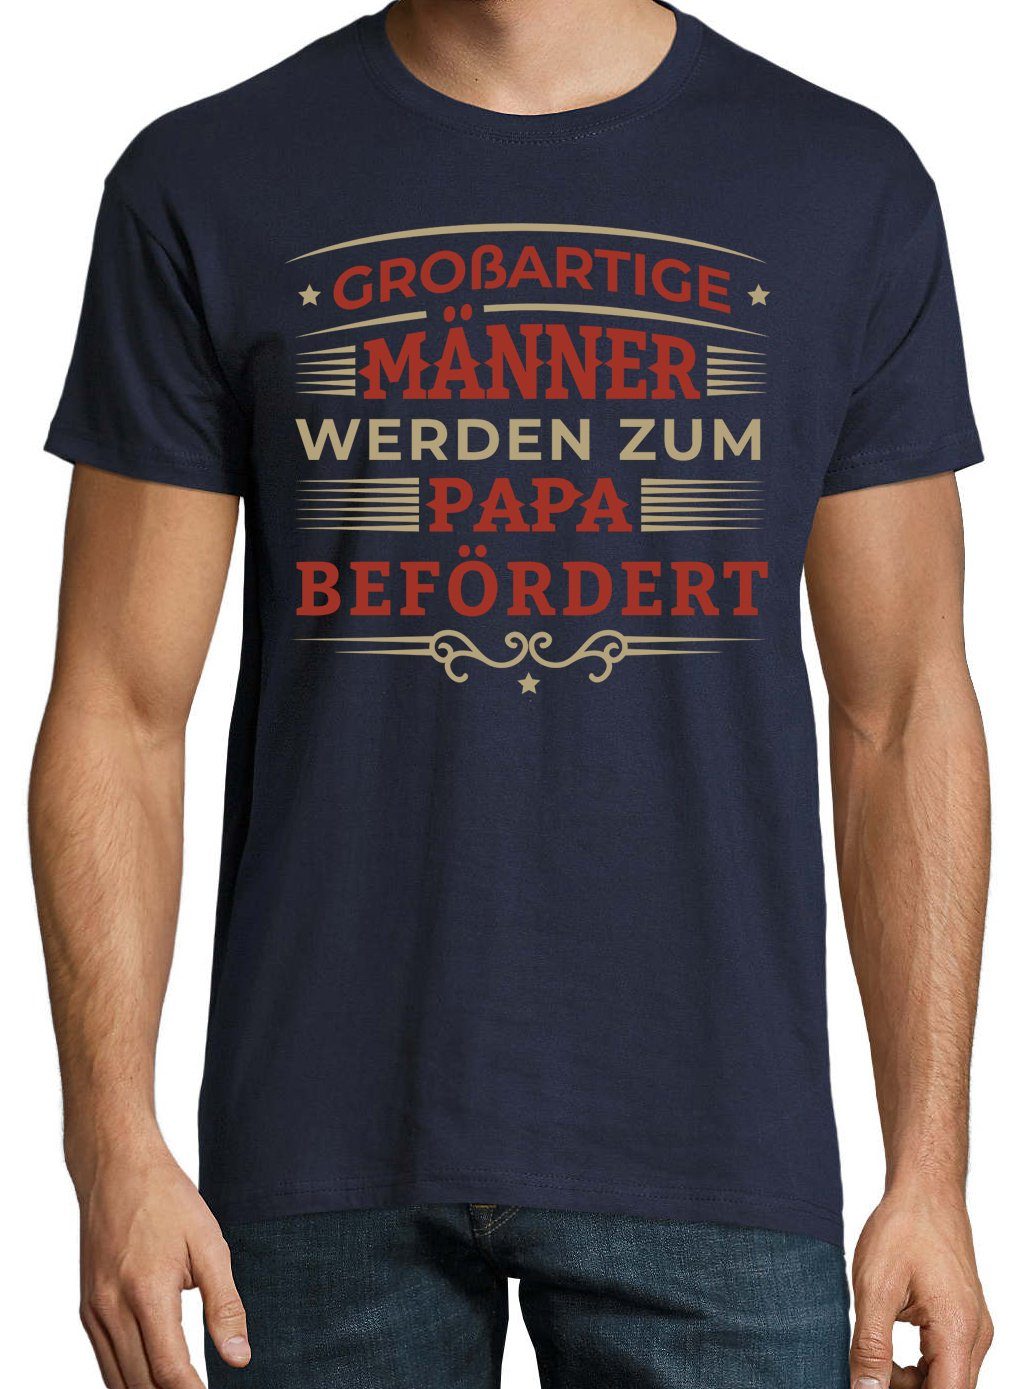 Designz Befördert" Youth Frontprint Shirt Zum Werden mit Navyblau trendigem Herren "Männer T-Shirt Papa